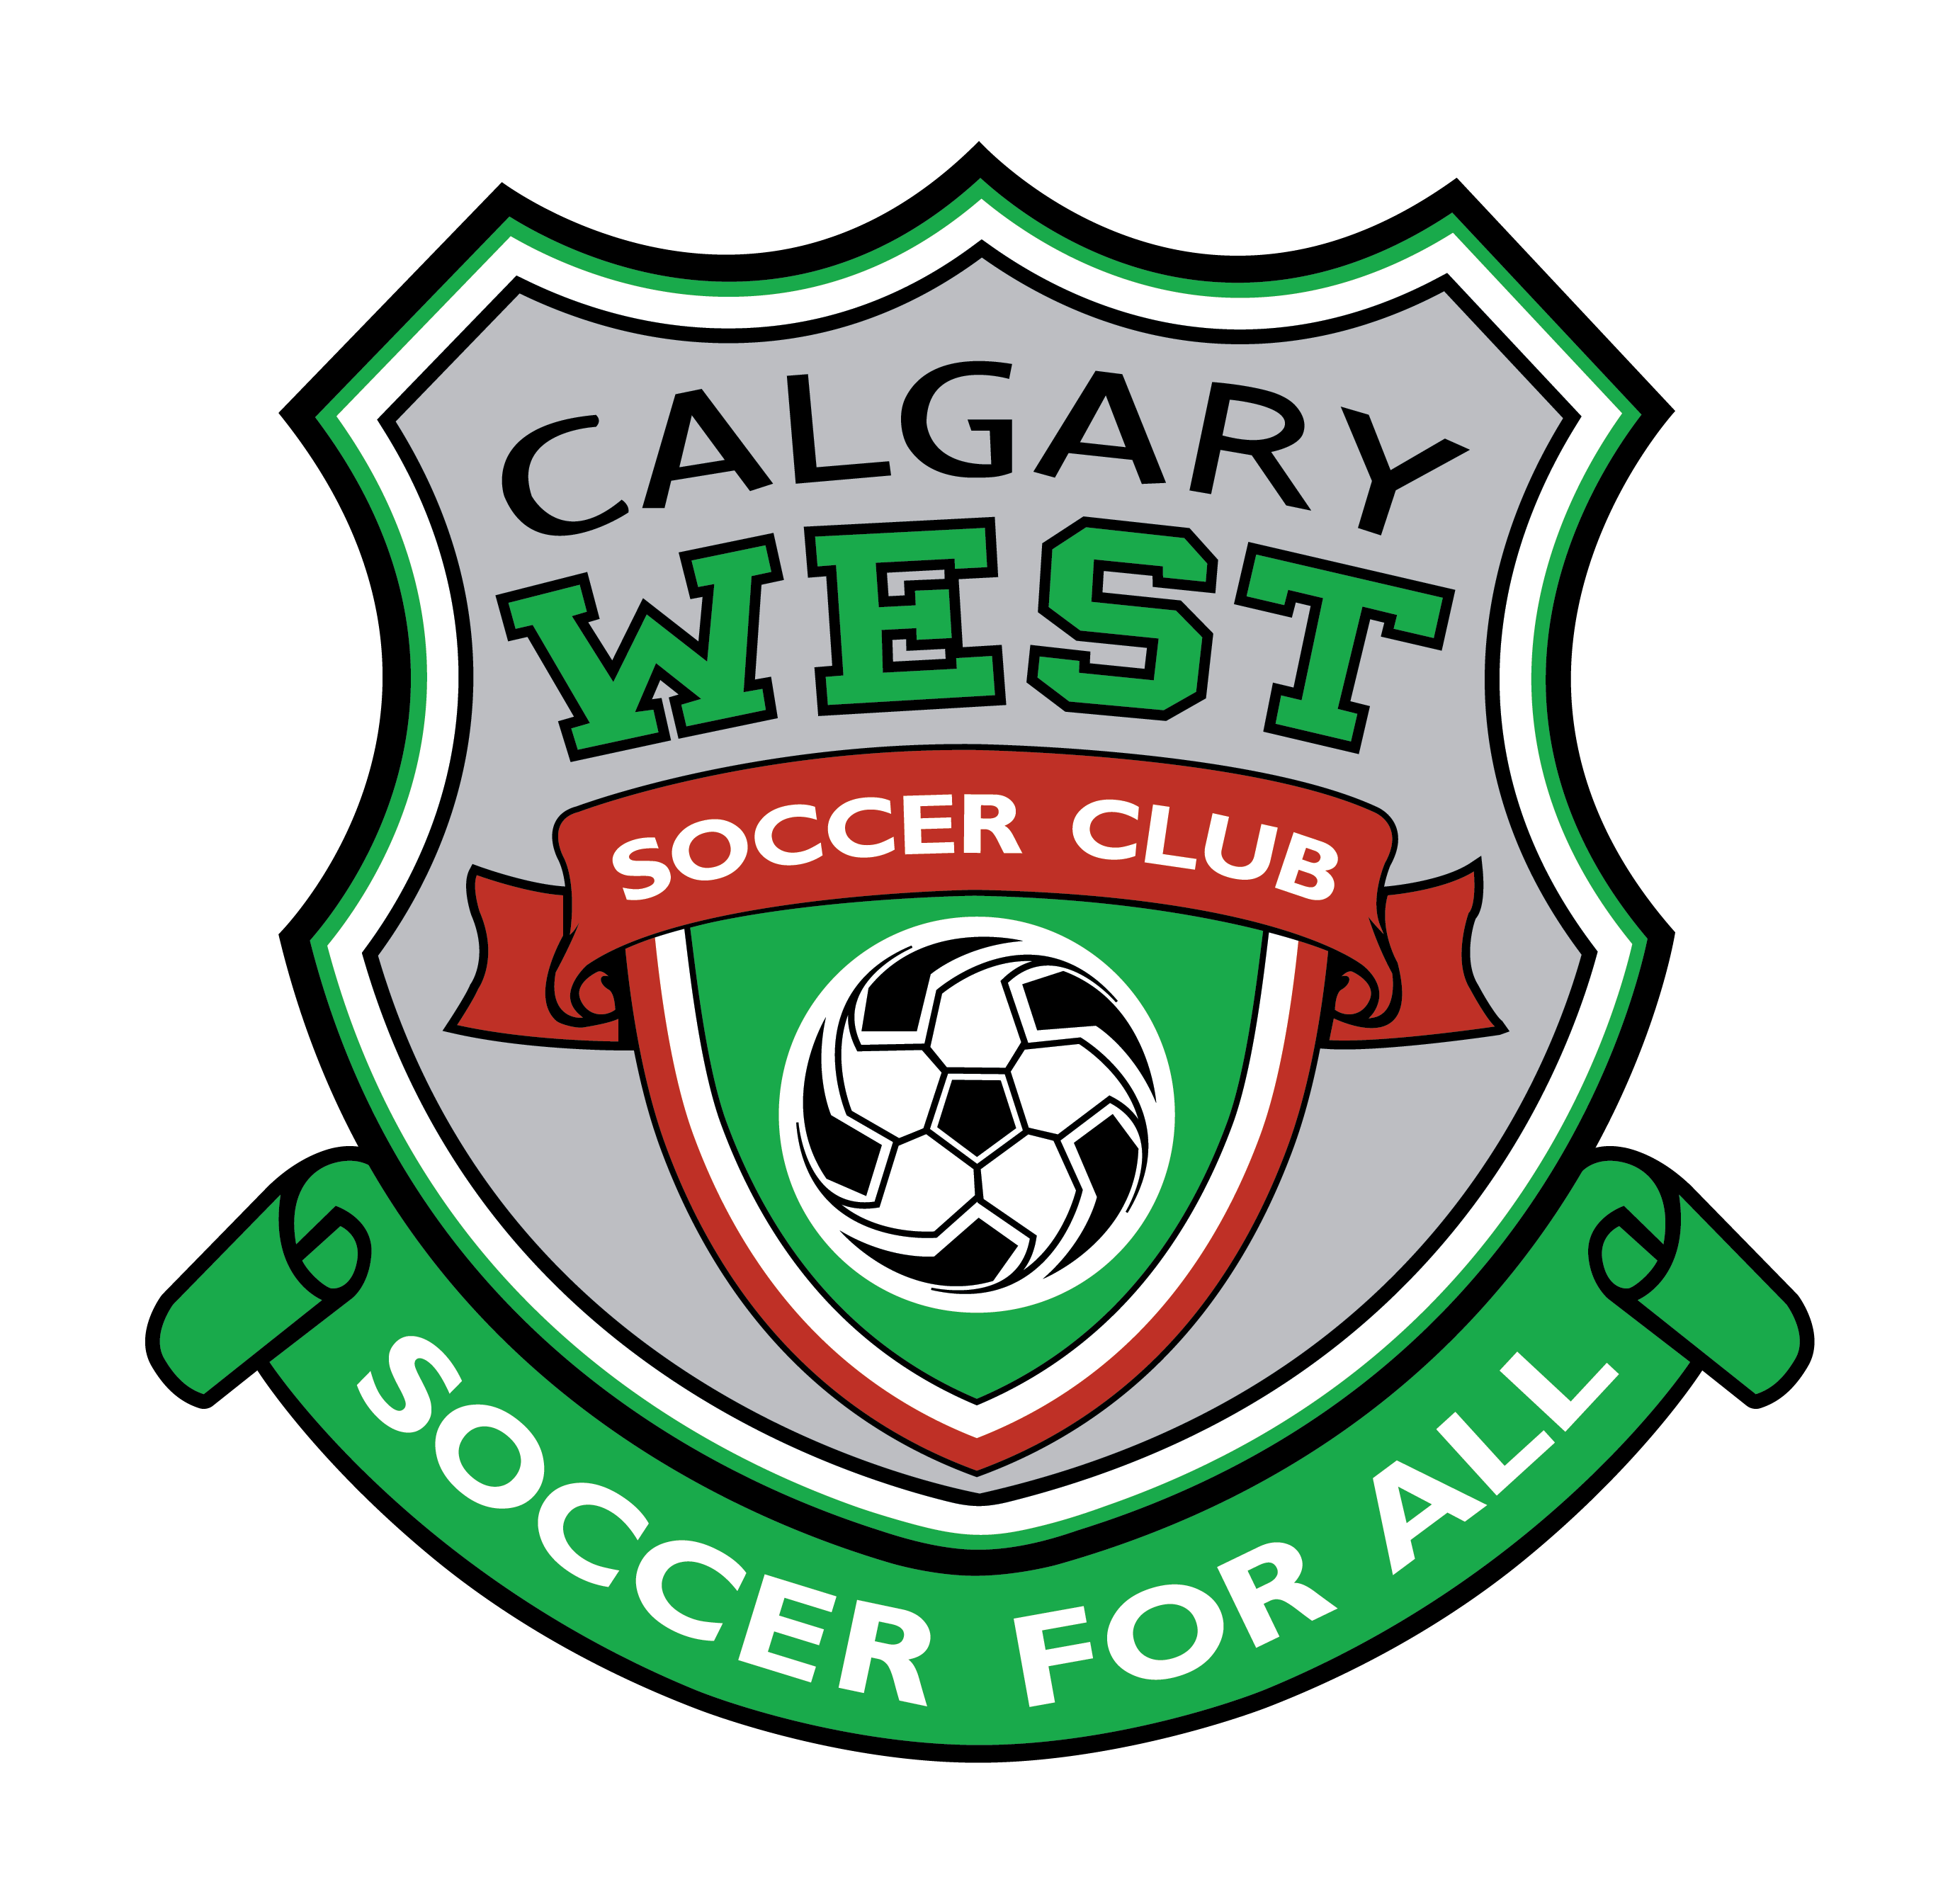 Calgary West Soccer Club